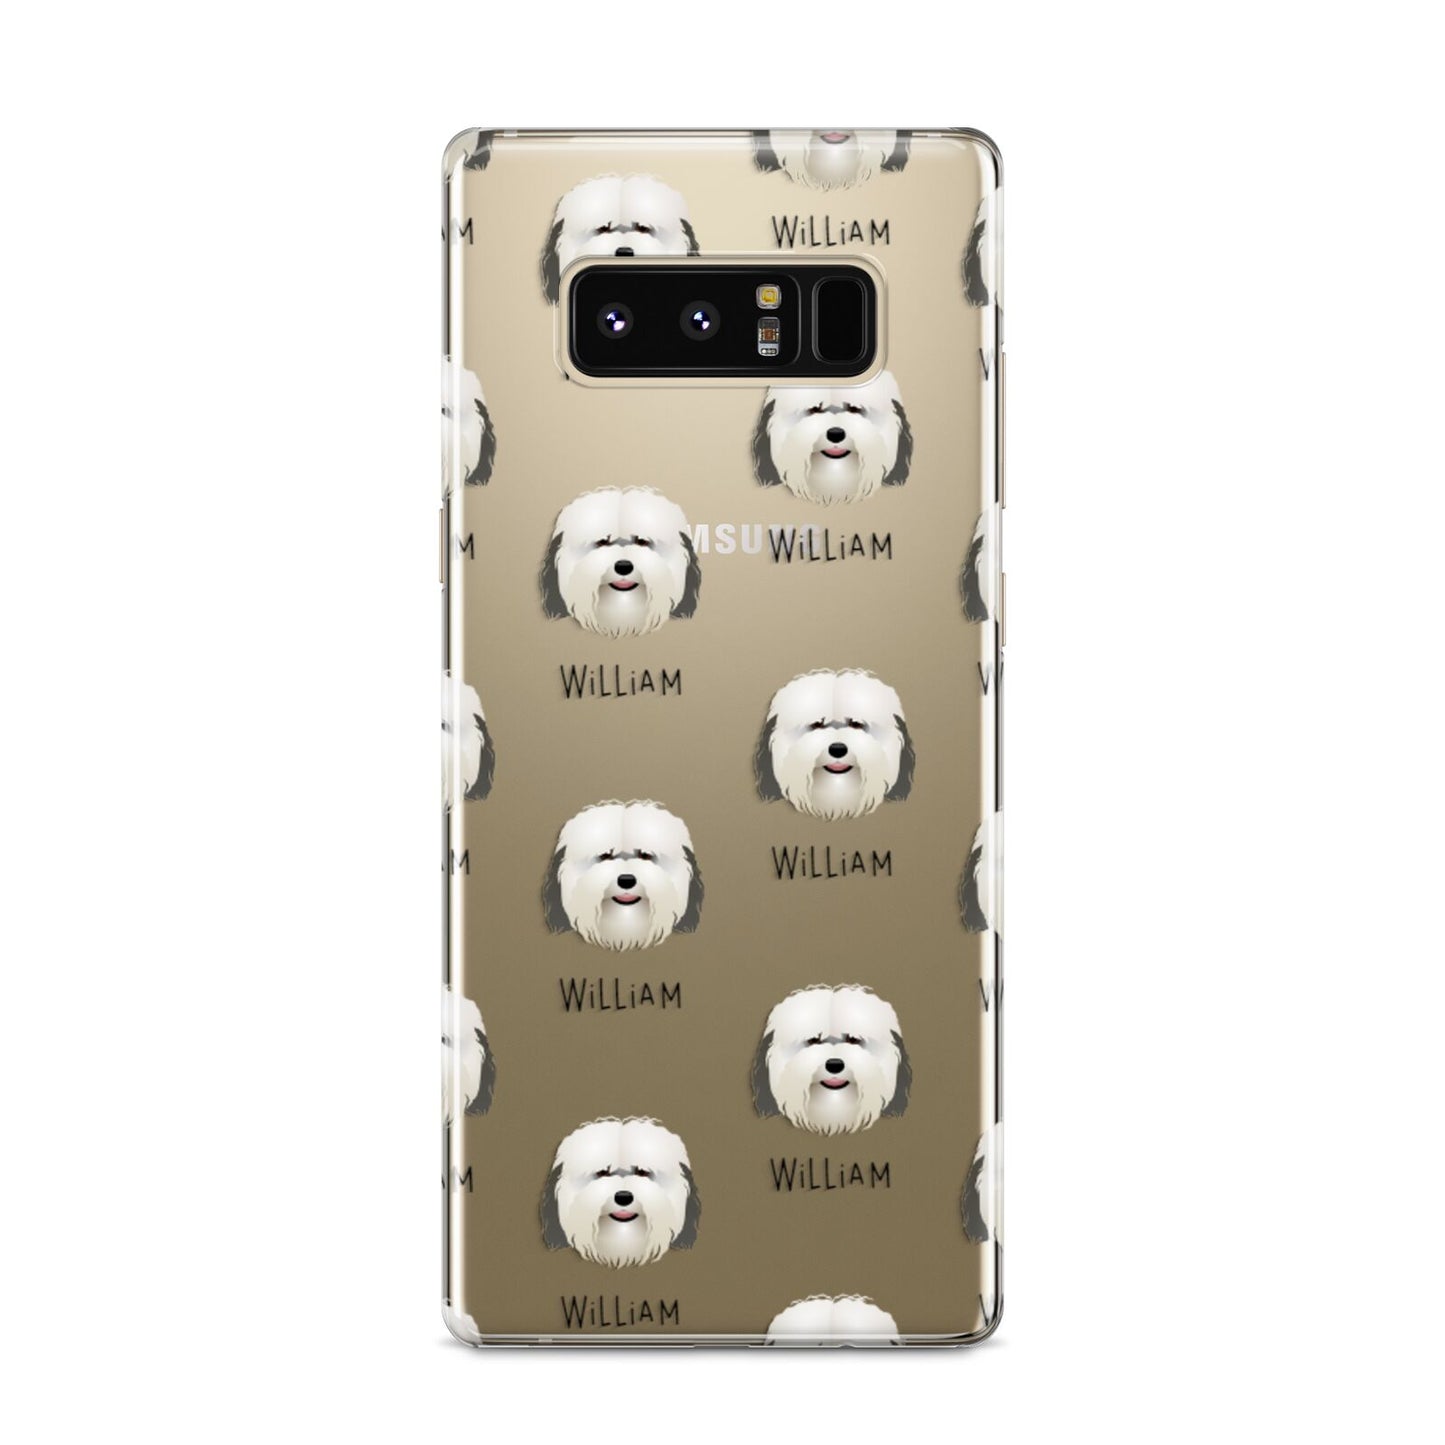 Coton De Tulear Icon with Name Samsung Galaxy S8 Case